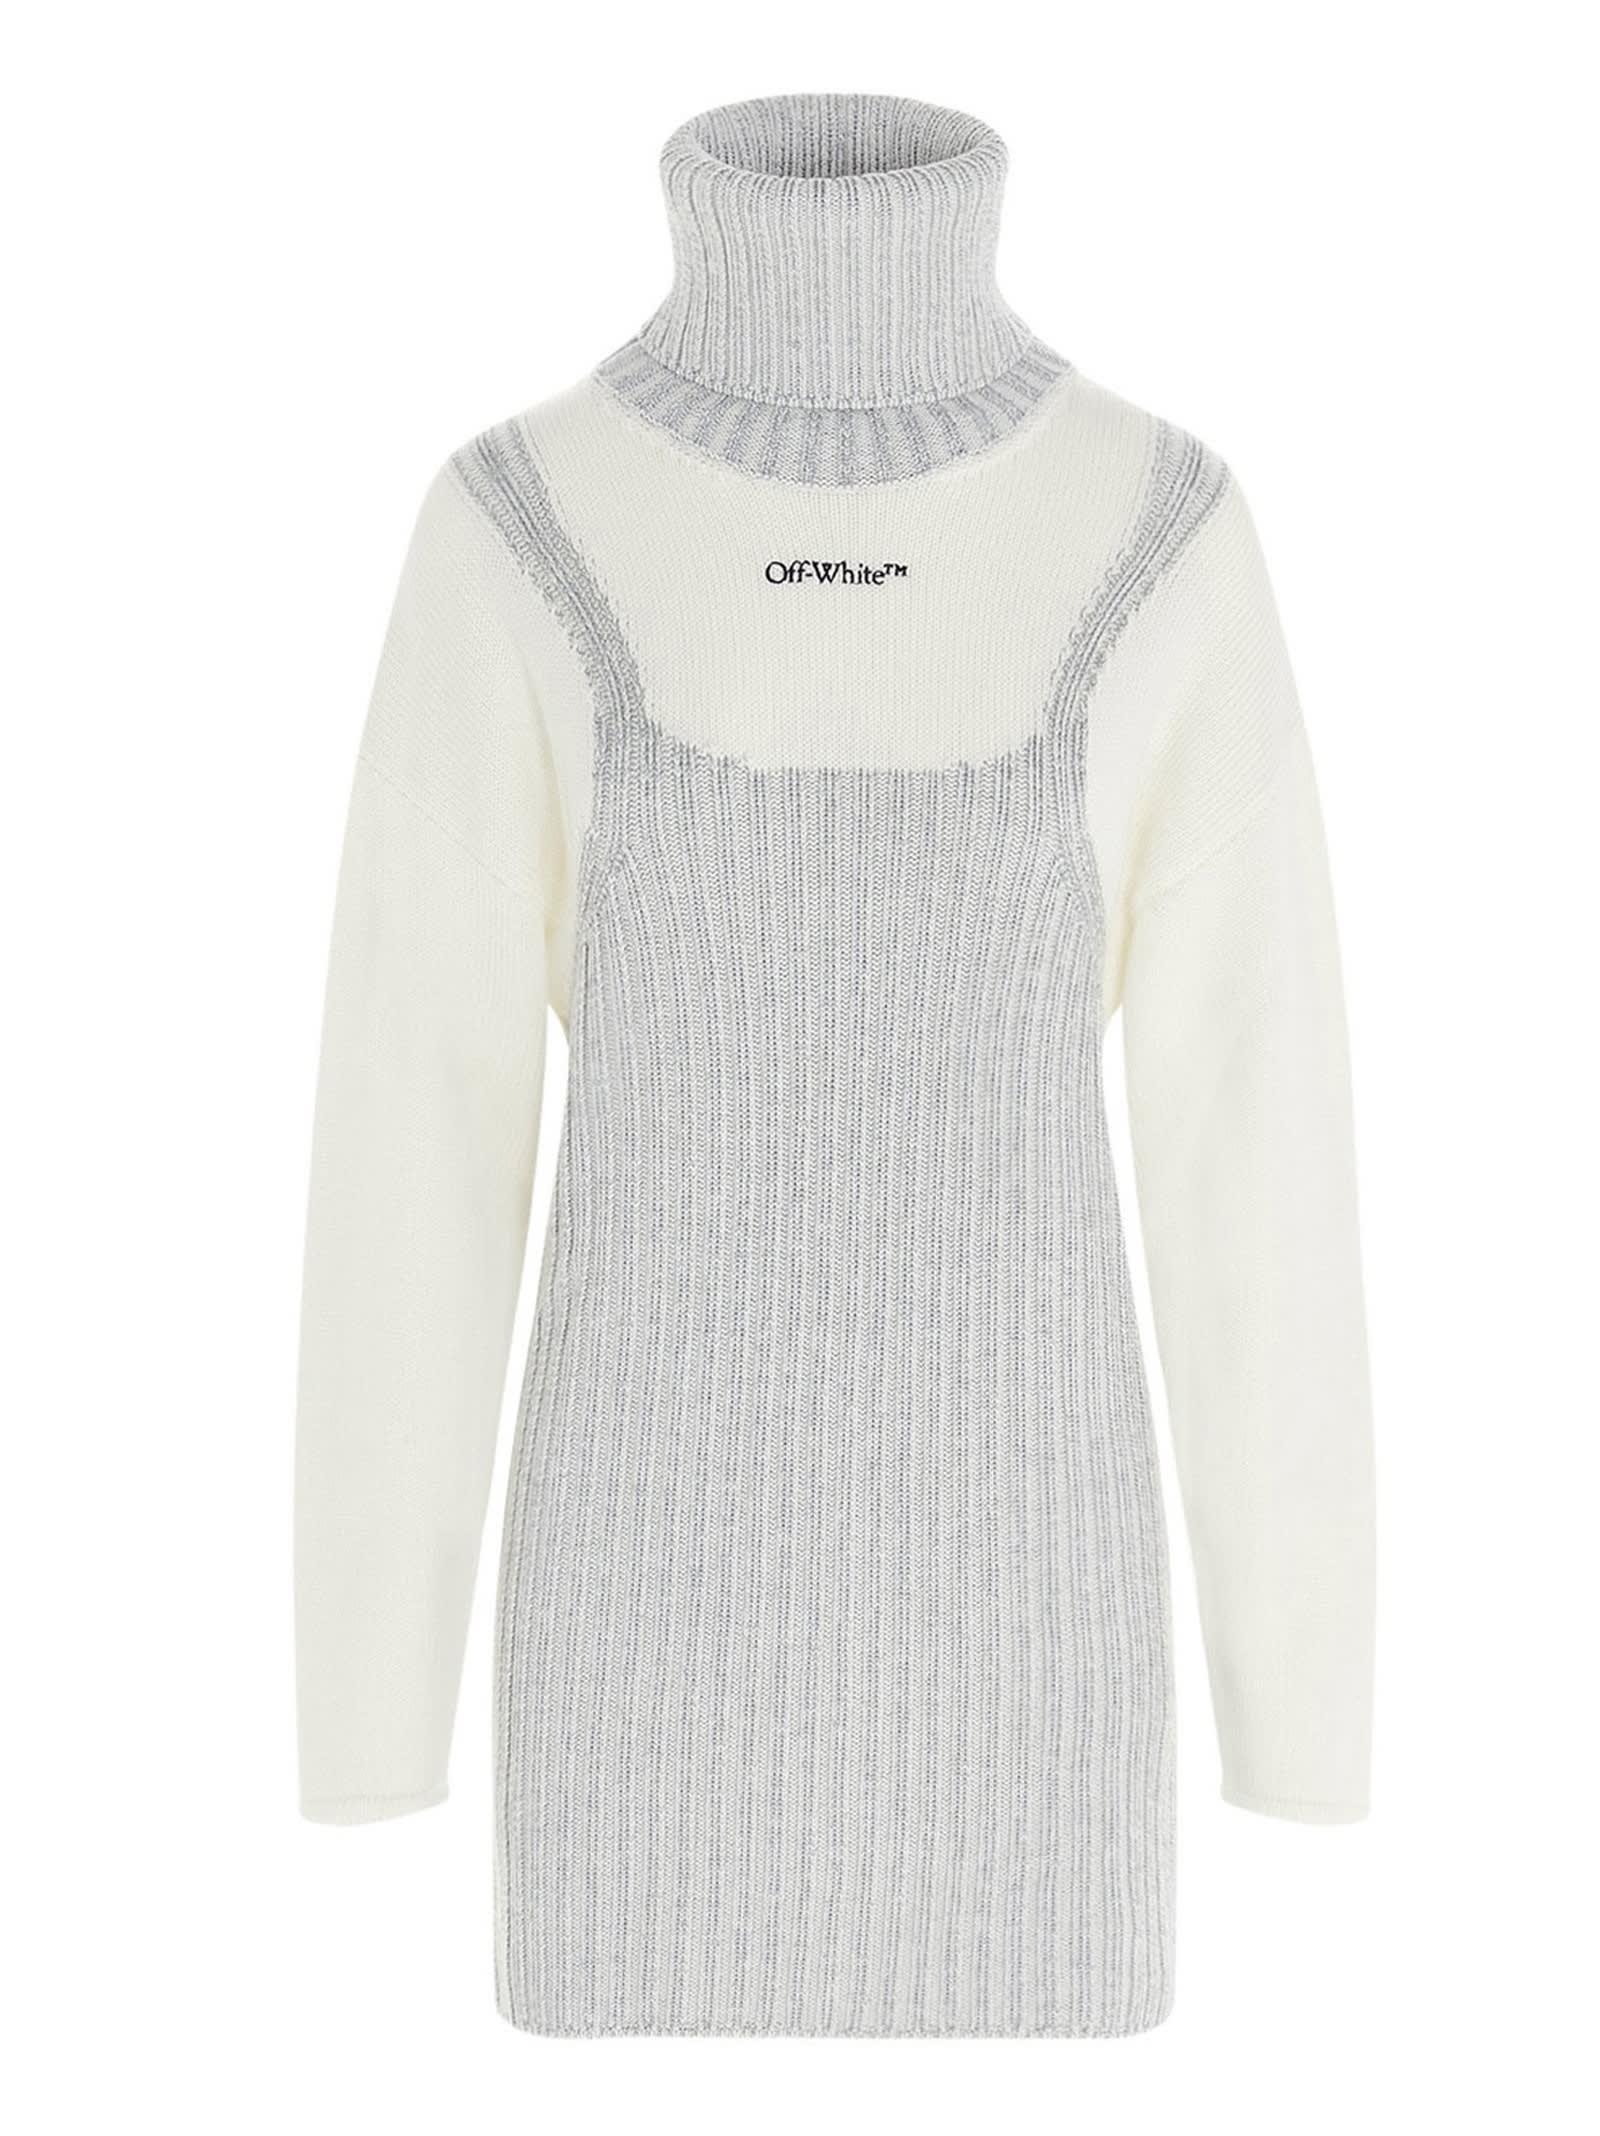 Off-White trompe Loeil Wool Sweater